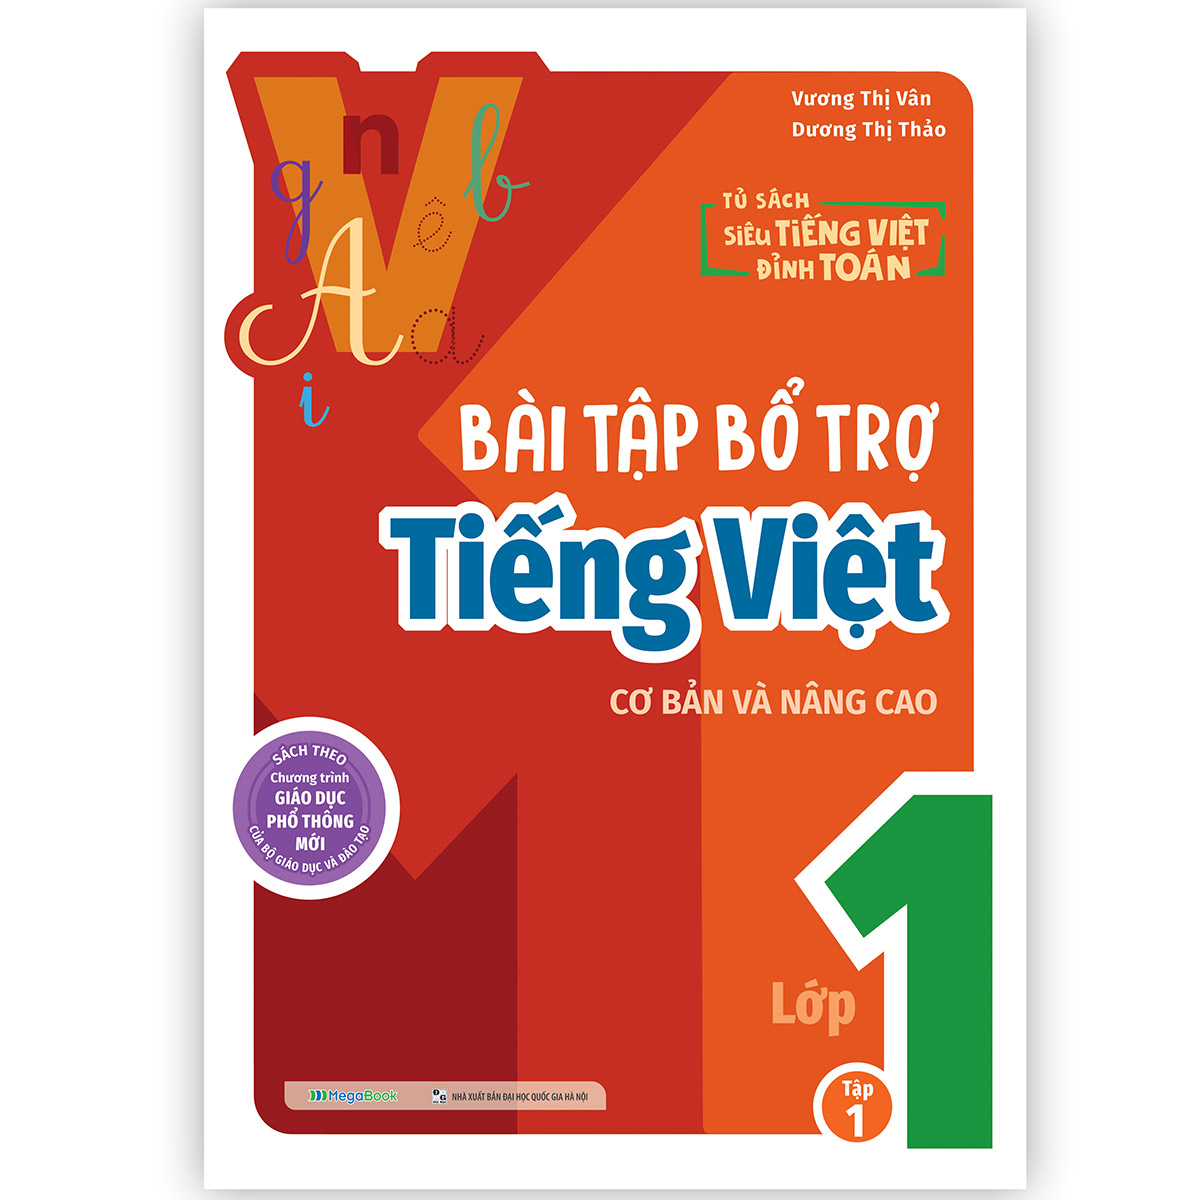 Hình ảnh Bài tập bổ trợ Tiếng Việt cơ bản và nâng cao lớp 1 Tập 1